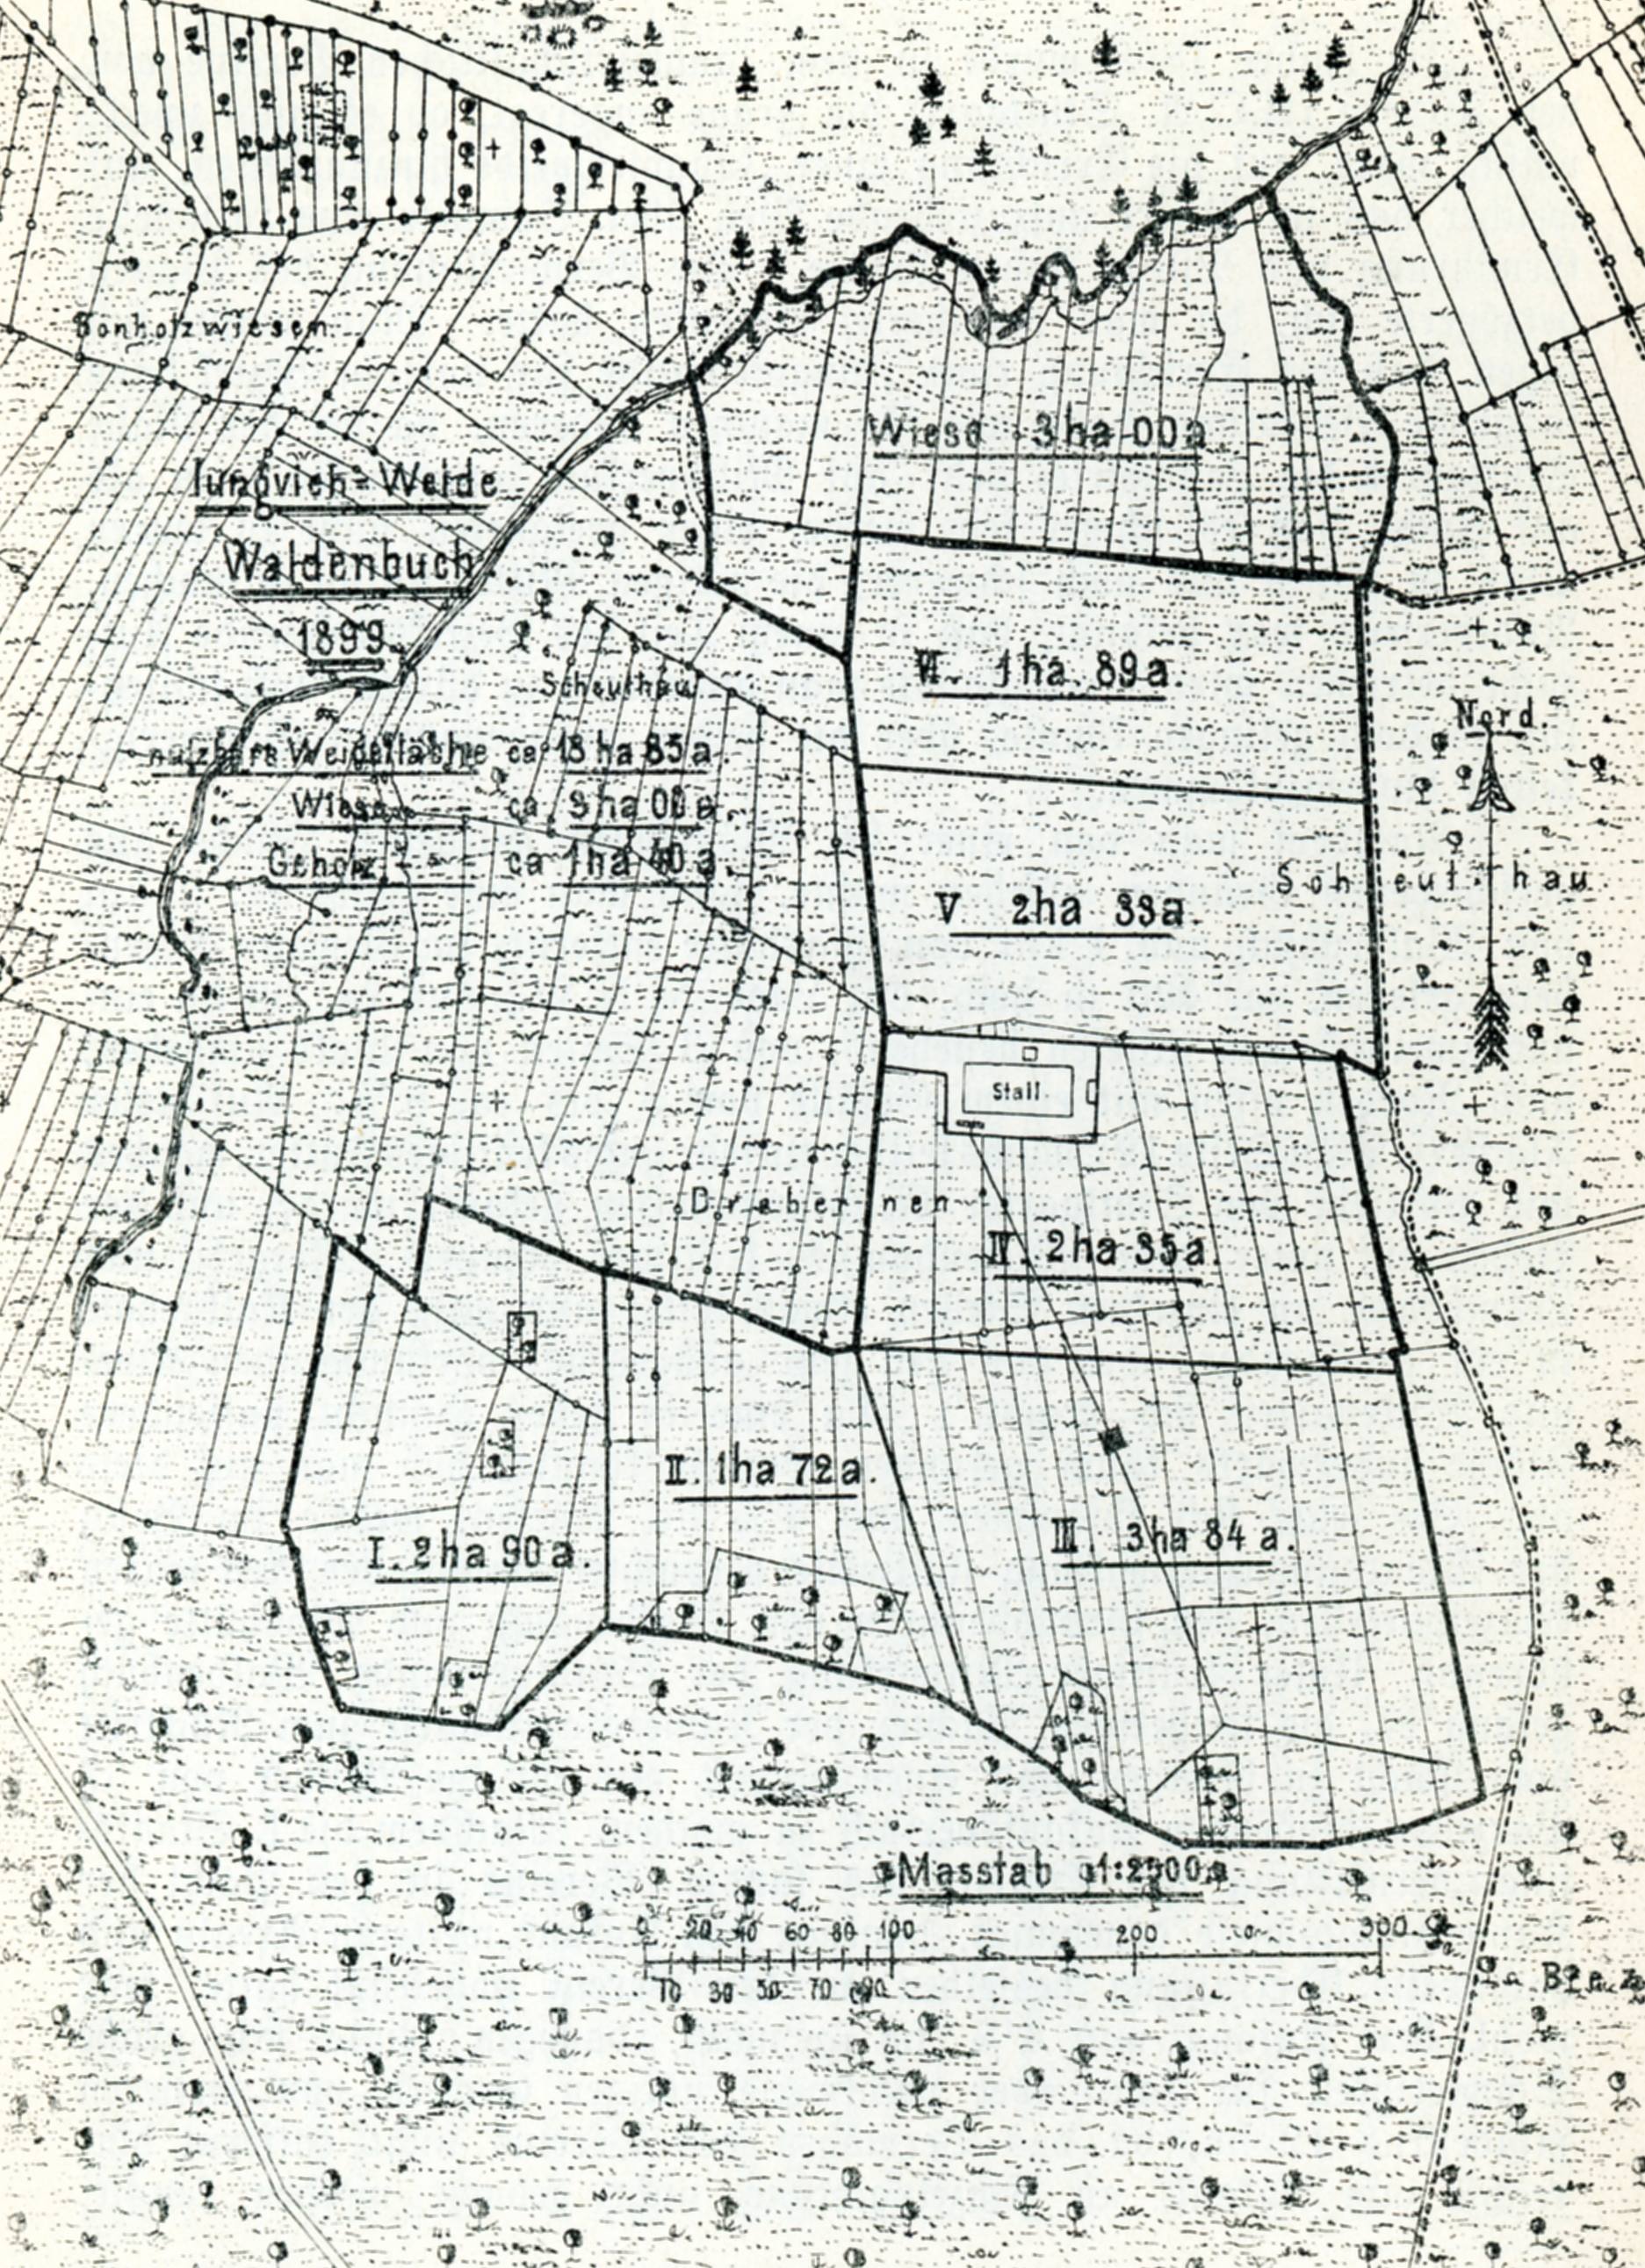 1889. Plan der Jungviehweide Waldenbuch